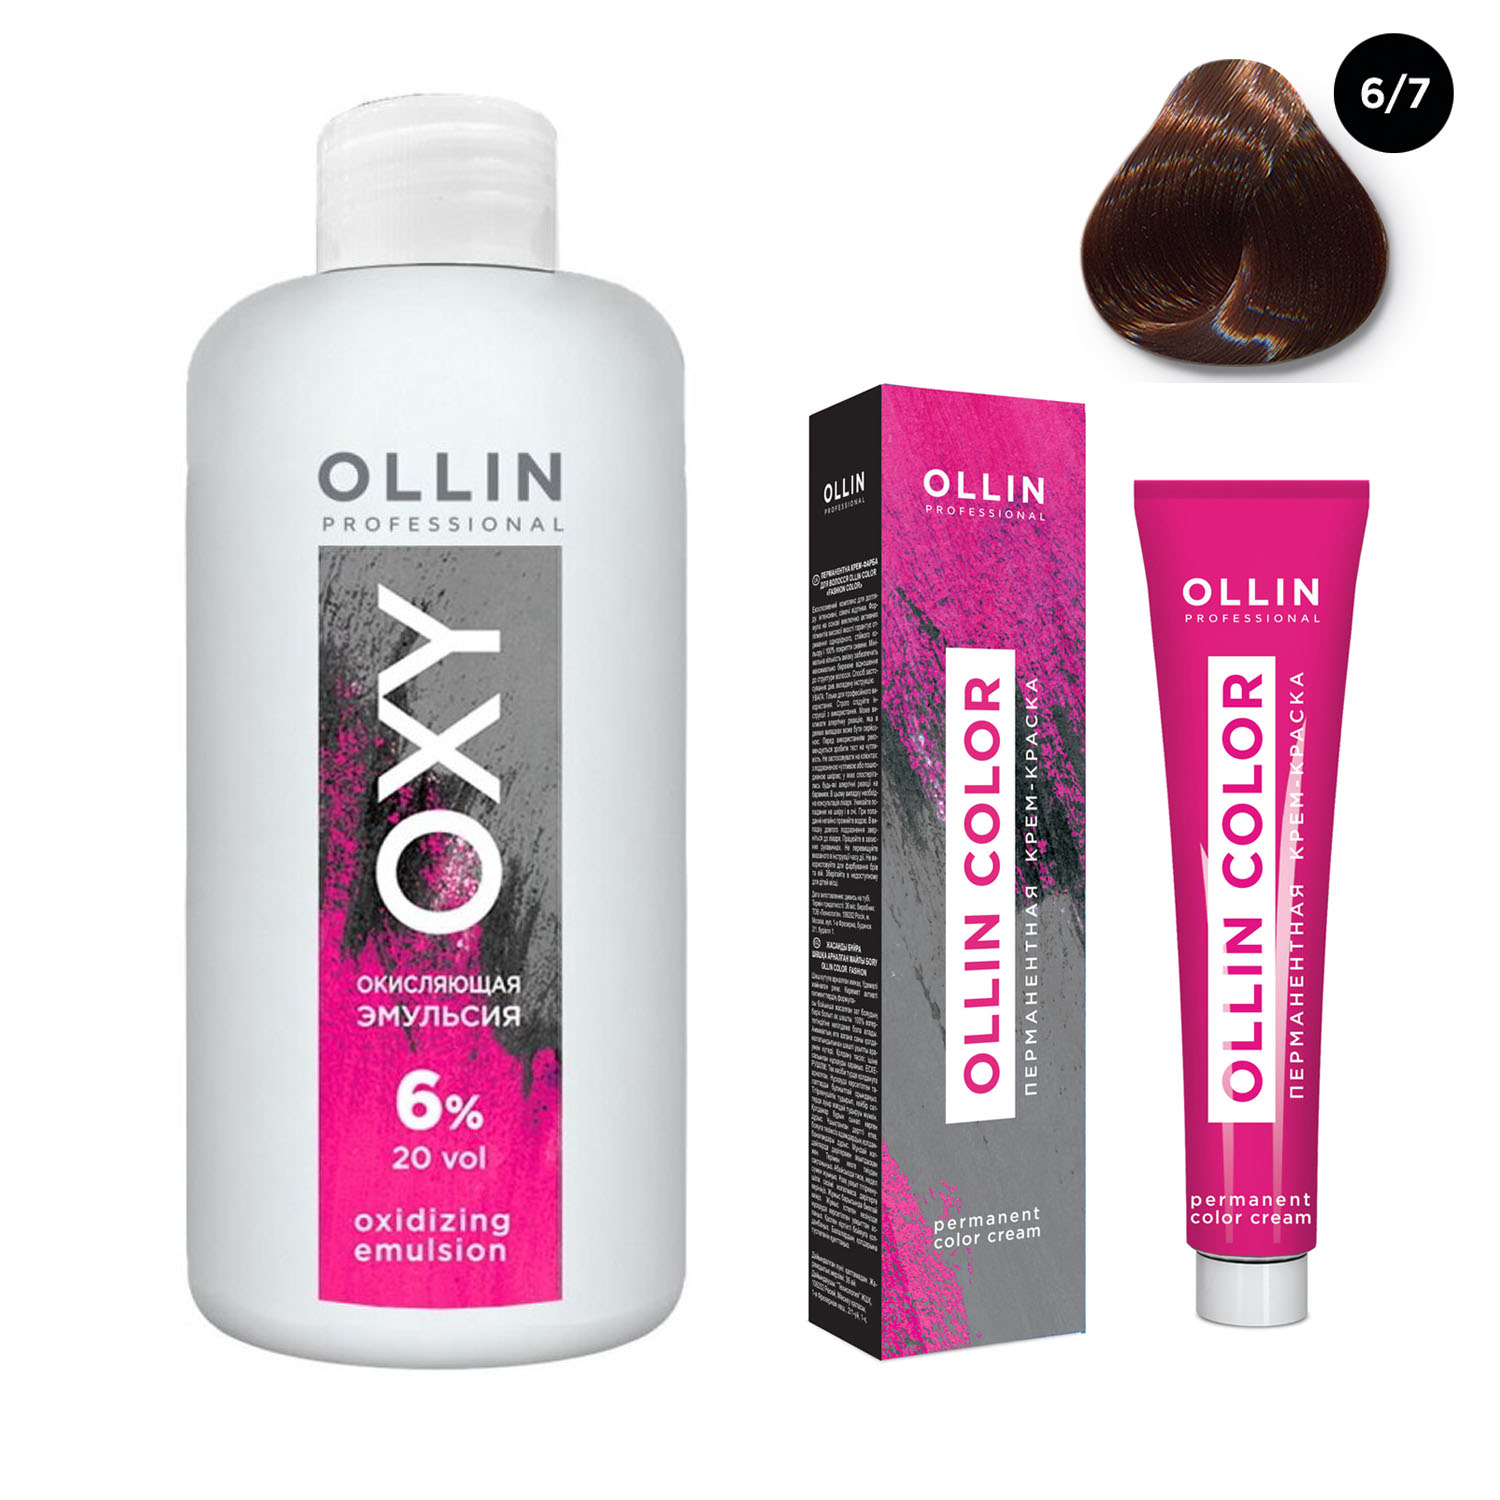 Ollin Professional Набор Перманентная крем-краска для волос Ollin Color оттенок 6/7 темно-русый коричневый 100 мл + Окисляющая эмульсия Oxy 6% 150 мл (Ollin Professional, Ollin Color)